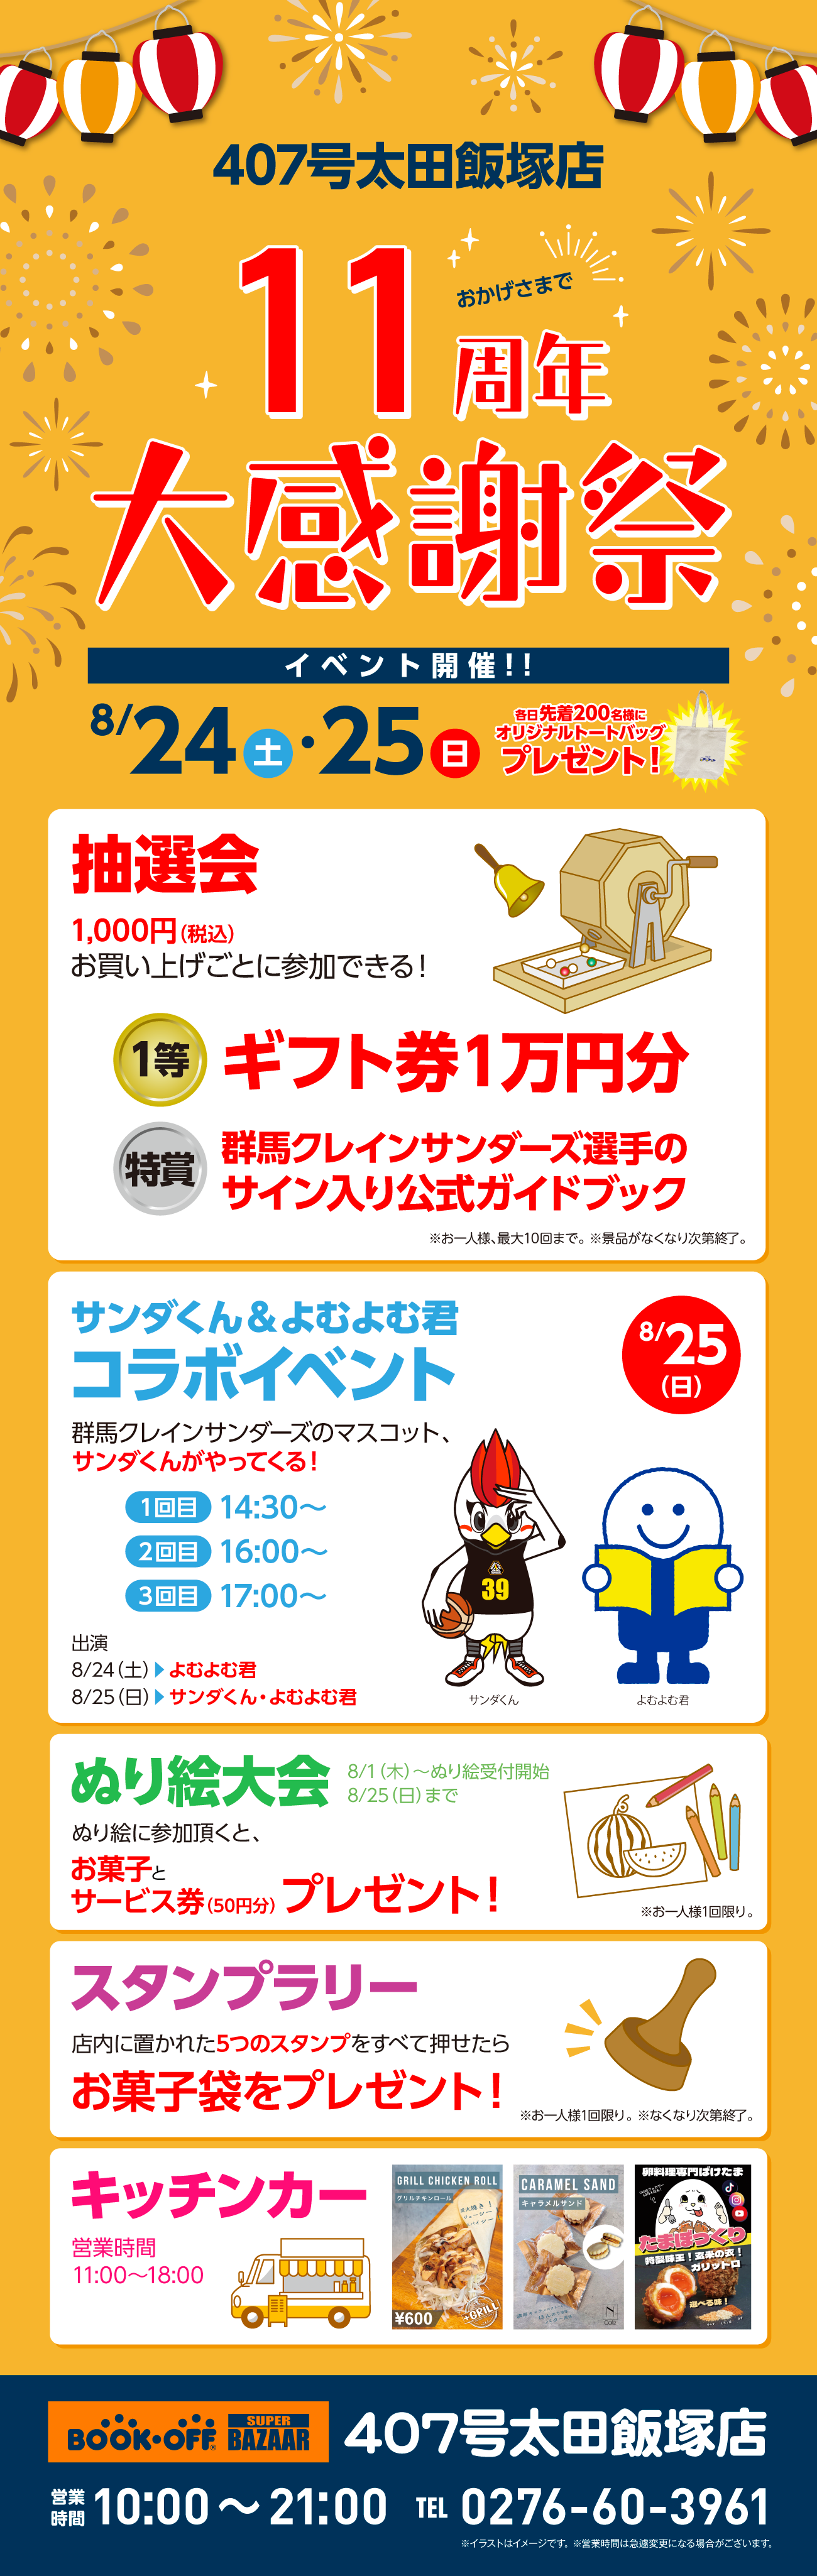 BOOKOFF SUPER BAZAAR 407号太田飯塚店 楽しみいっぱい！誕生祭開催♪